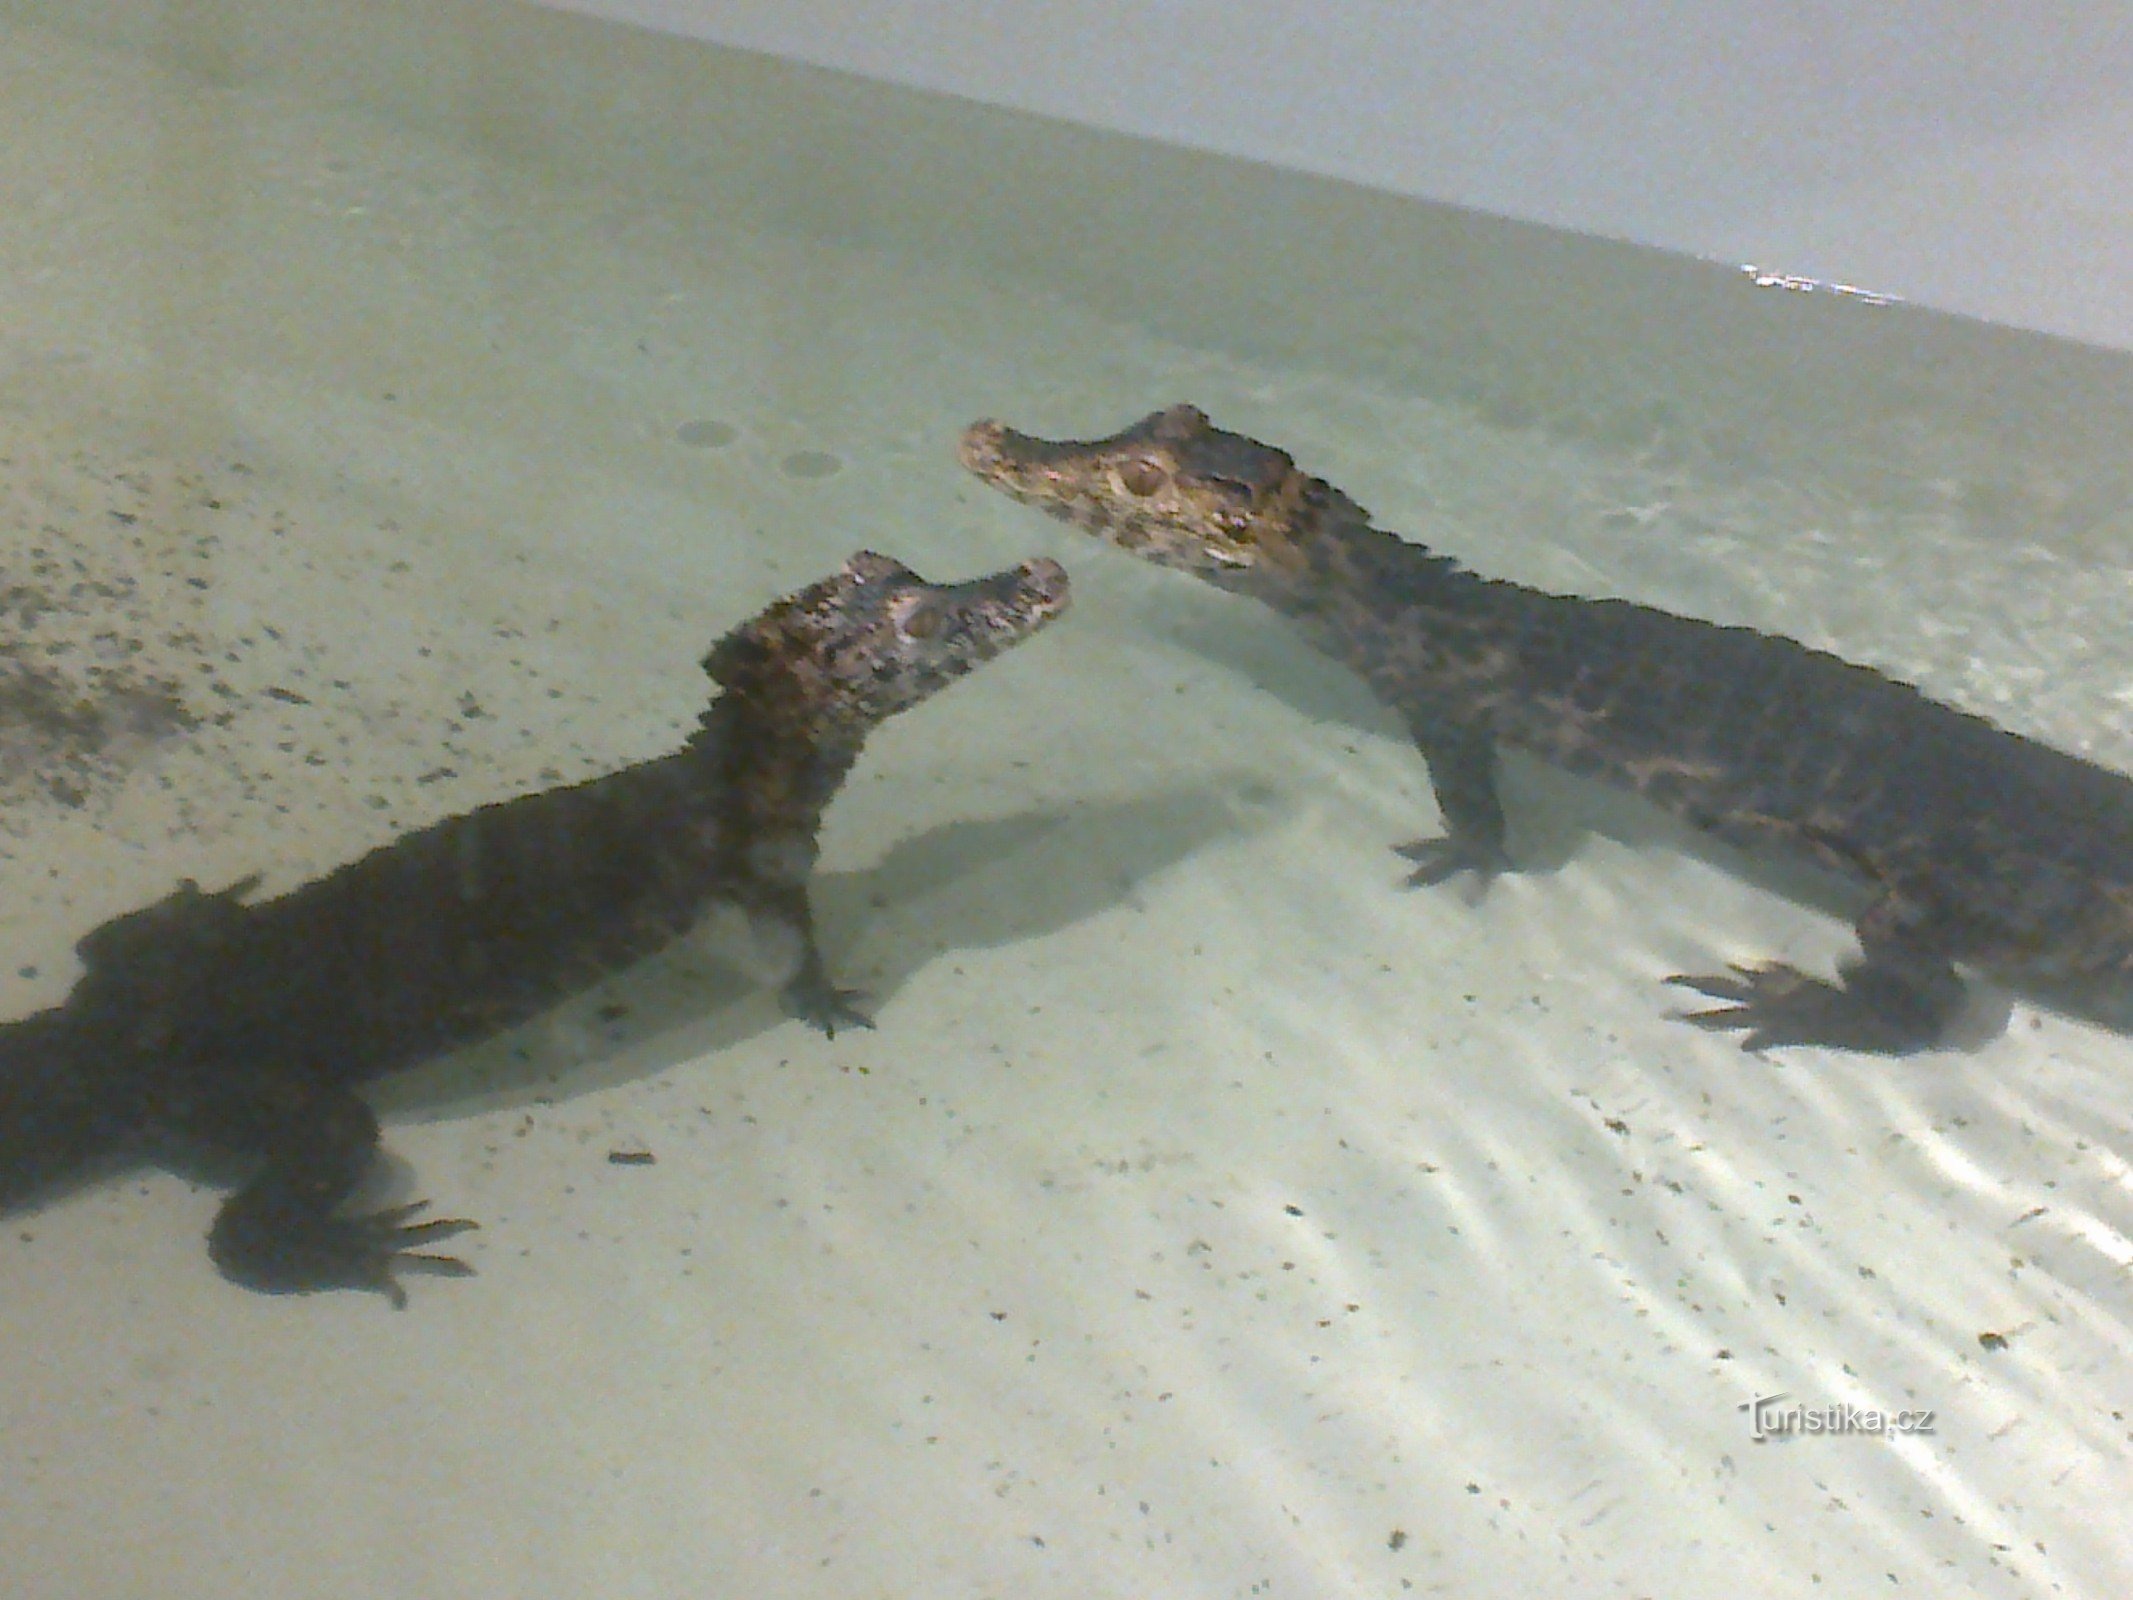 Krokodiler